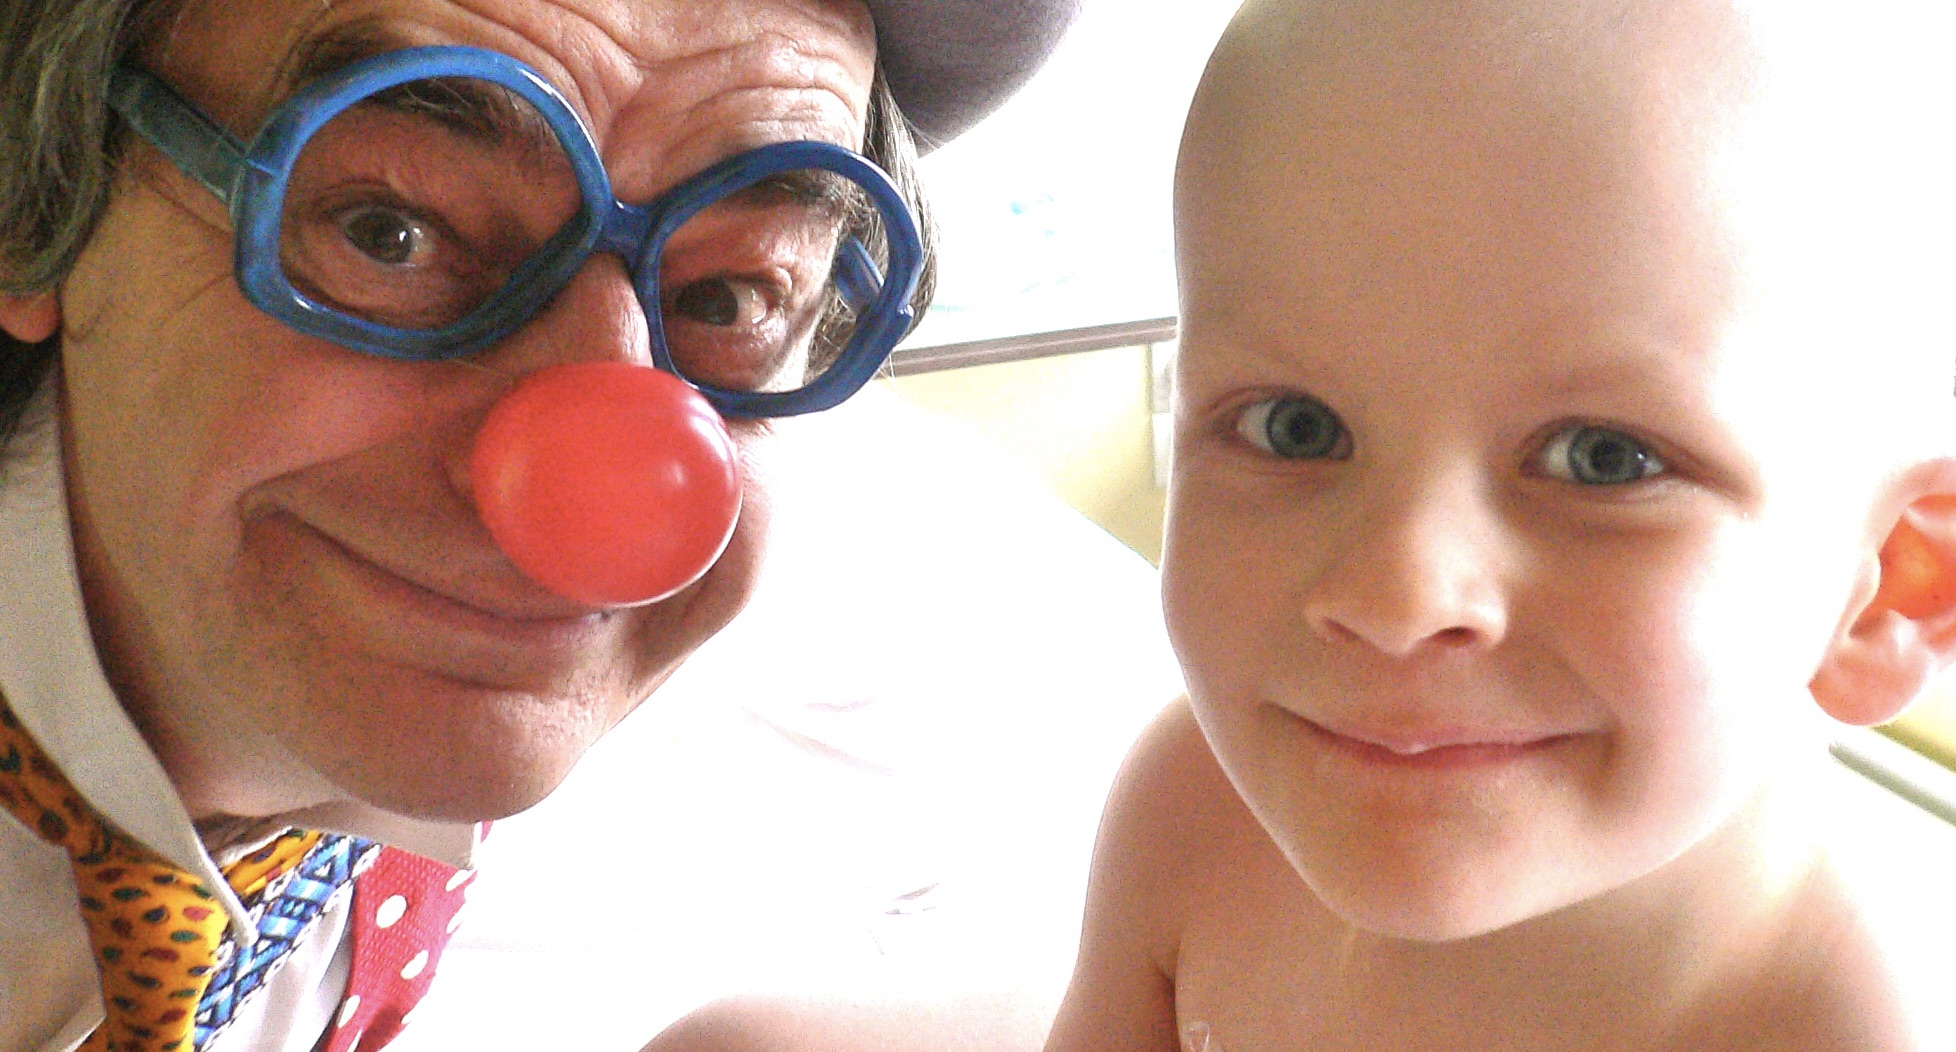 À quel moment se dit-on : « Tiens, j’irais bien faire le clown dans un hôpital pour des enfants gravement malades ? ». (Photo Renelde Liégeois)